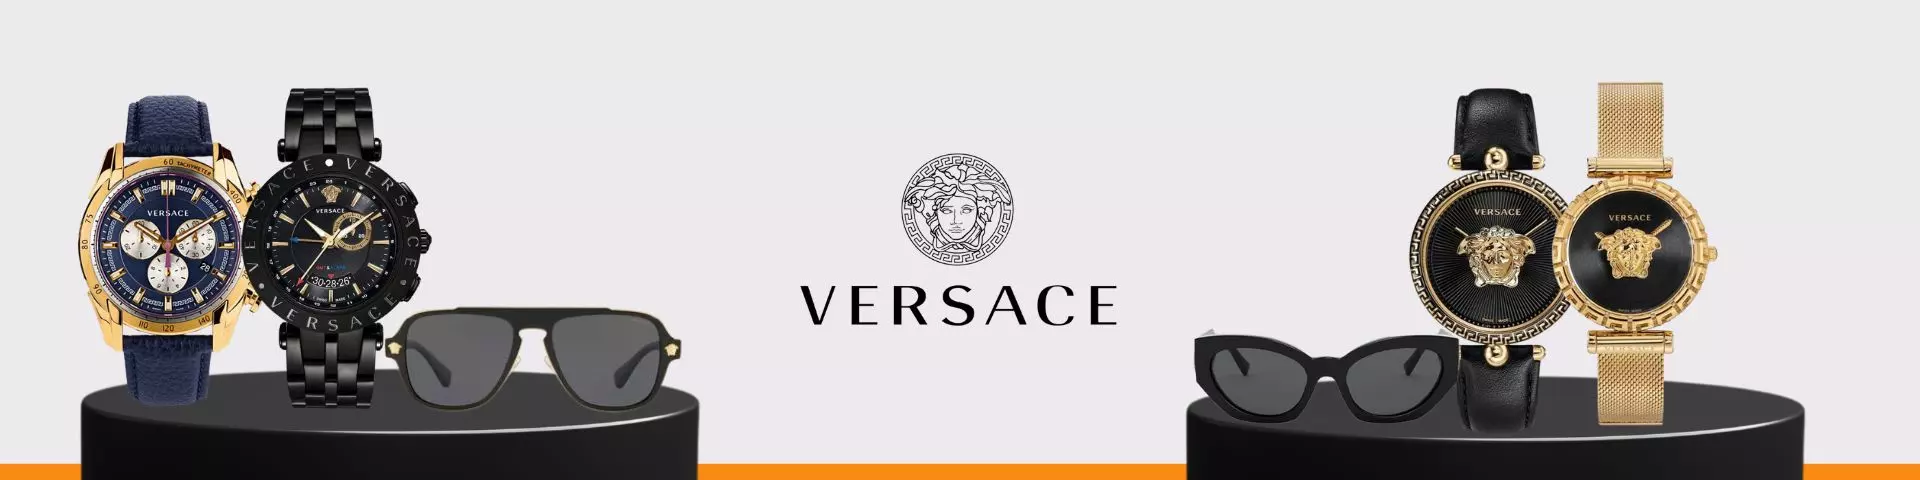 Lunette et Montre Versace pour Homme et Femme Lunette et Montre Versace prix Tunisie